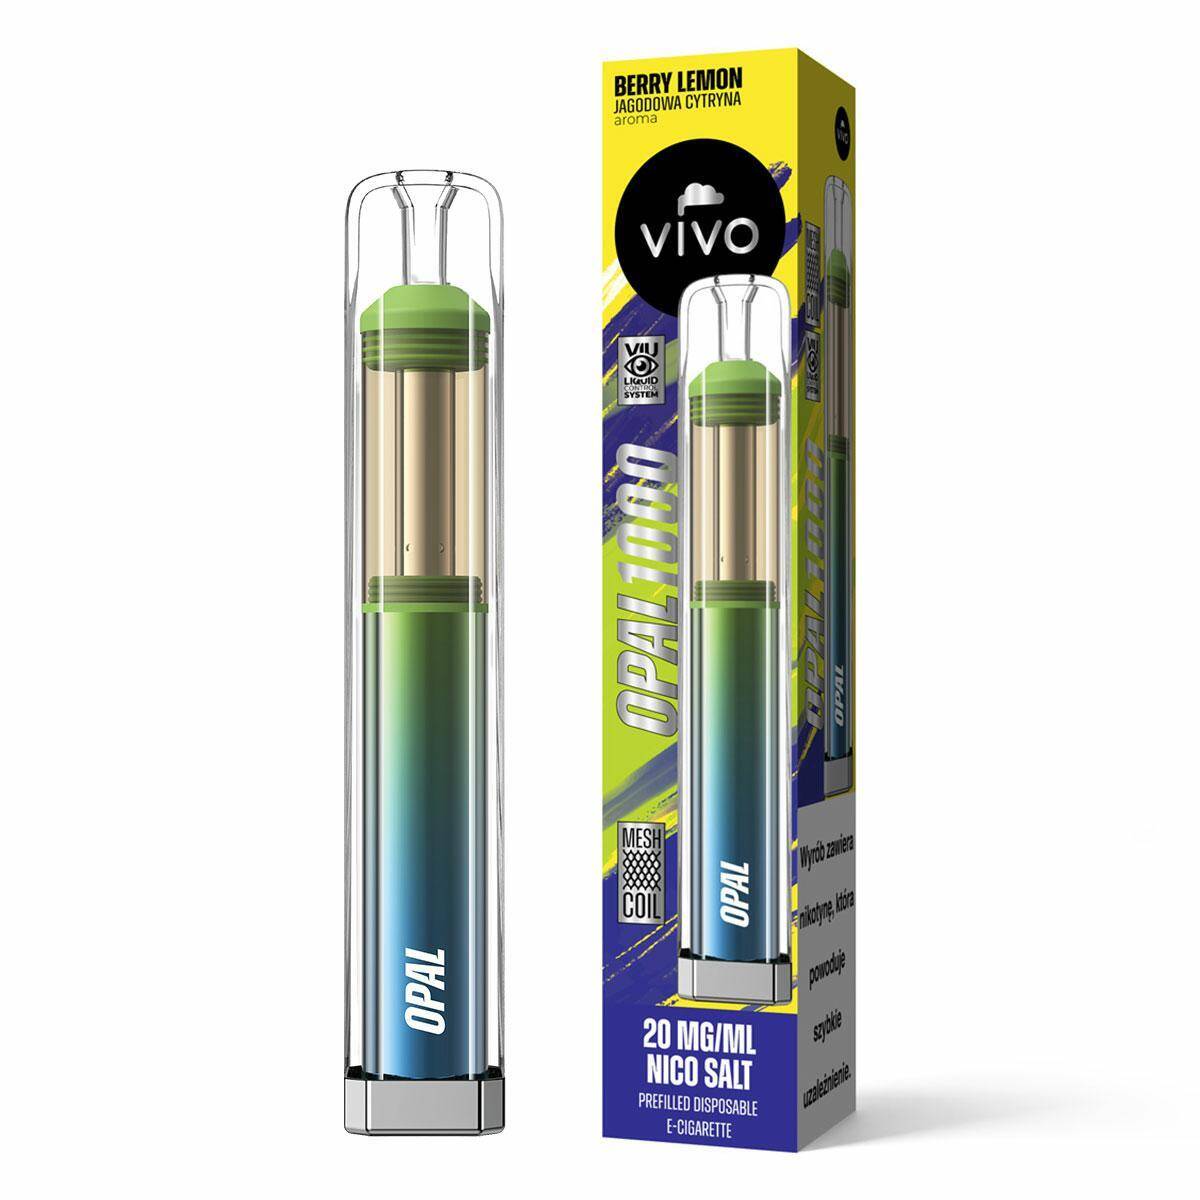 Disposable e-cigarette VIVO OPAL - Berry Lemon 20mg